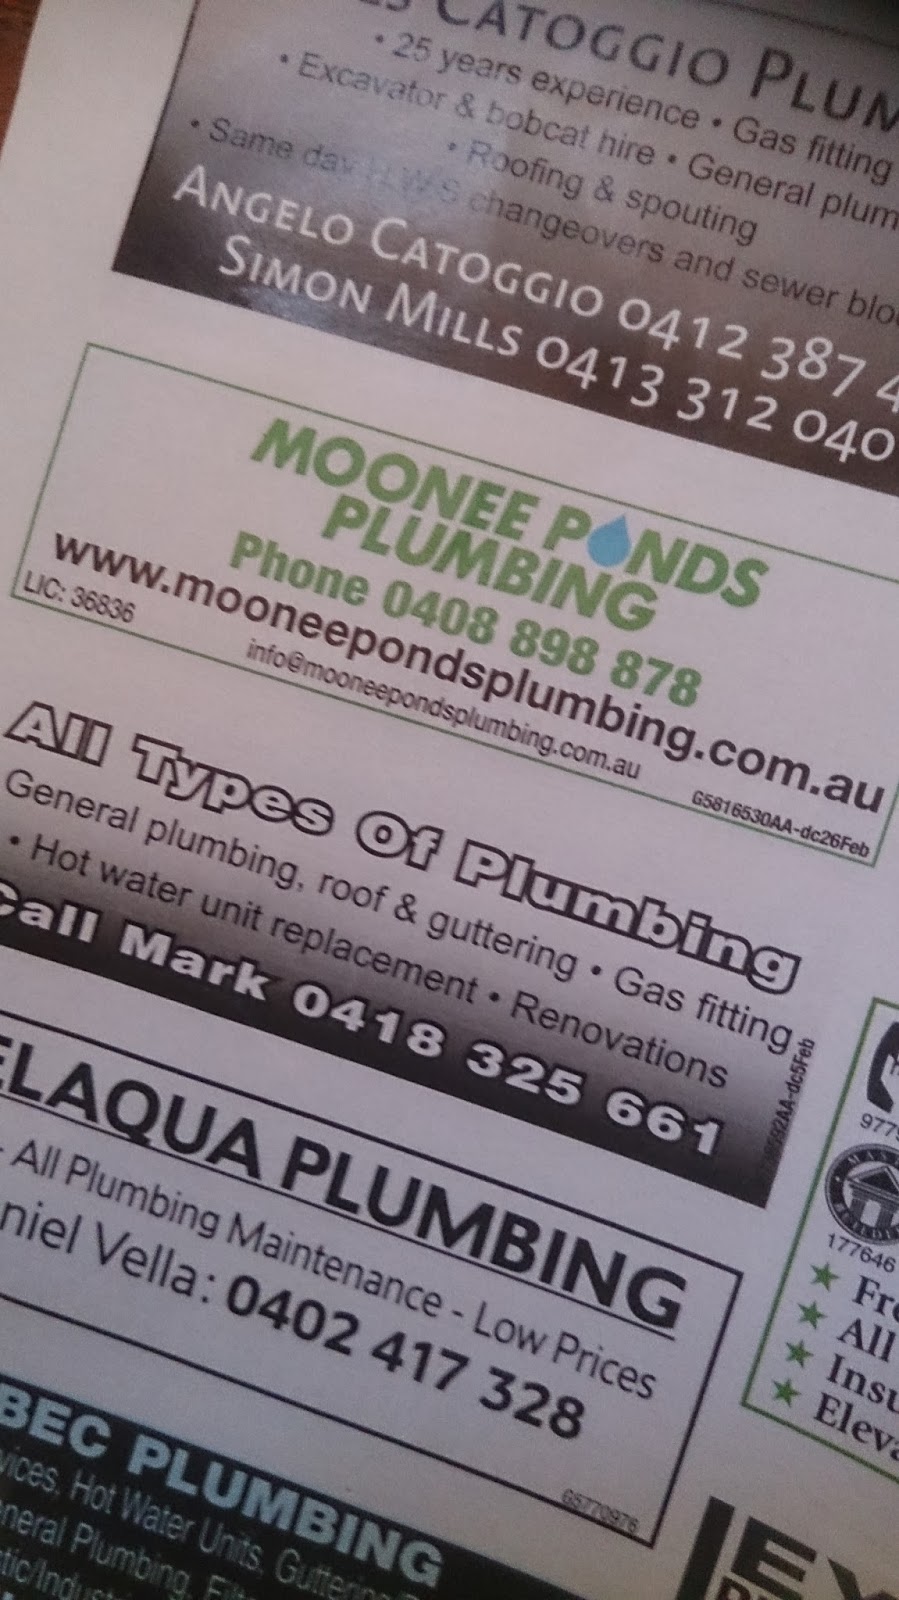 Moonee Ponds Plumbing + Bathrooms | plumber | 47 Ormond Rd, Moonee Ponds VIC 3039, Australia | 0408898878 OR +61 408 898 878